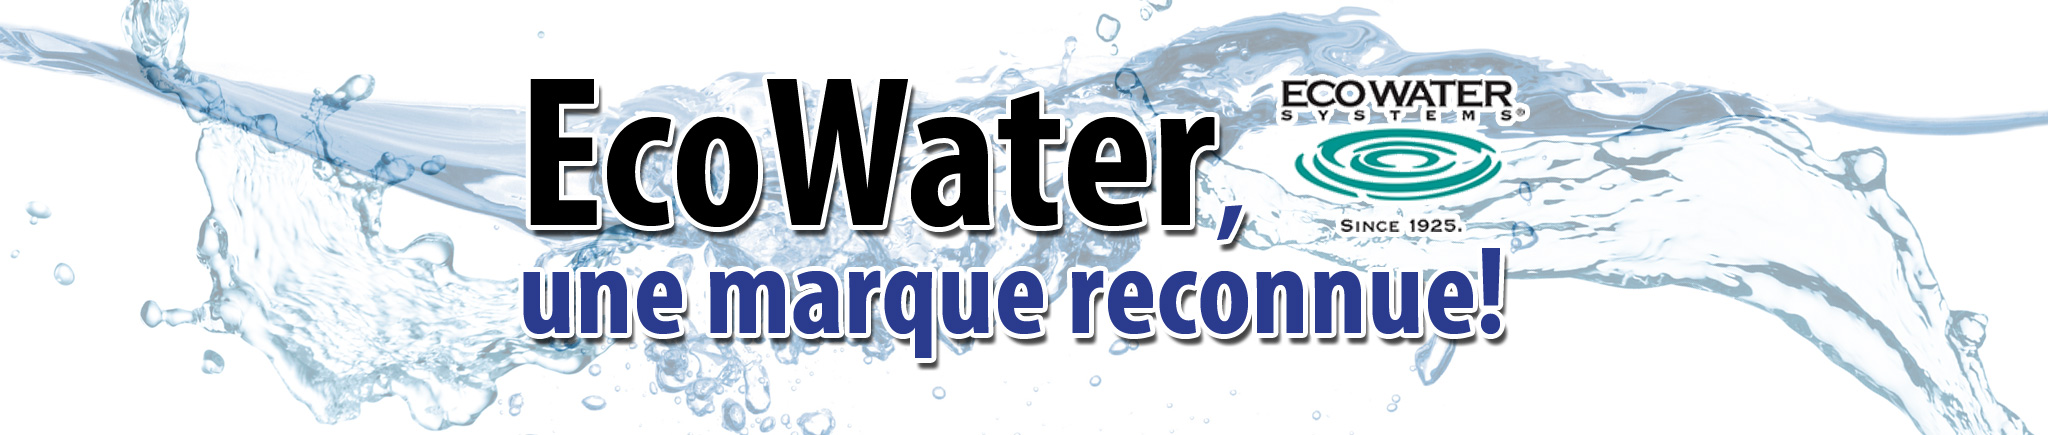 EcoWater, une marque reconnue dans le domaine des adoucisseurs d'eau, des filtres à eau et autres systèmes de traitement d'eau!